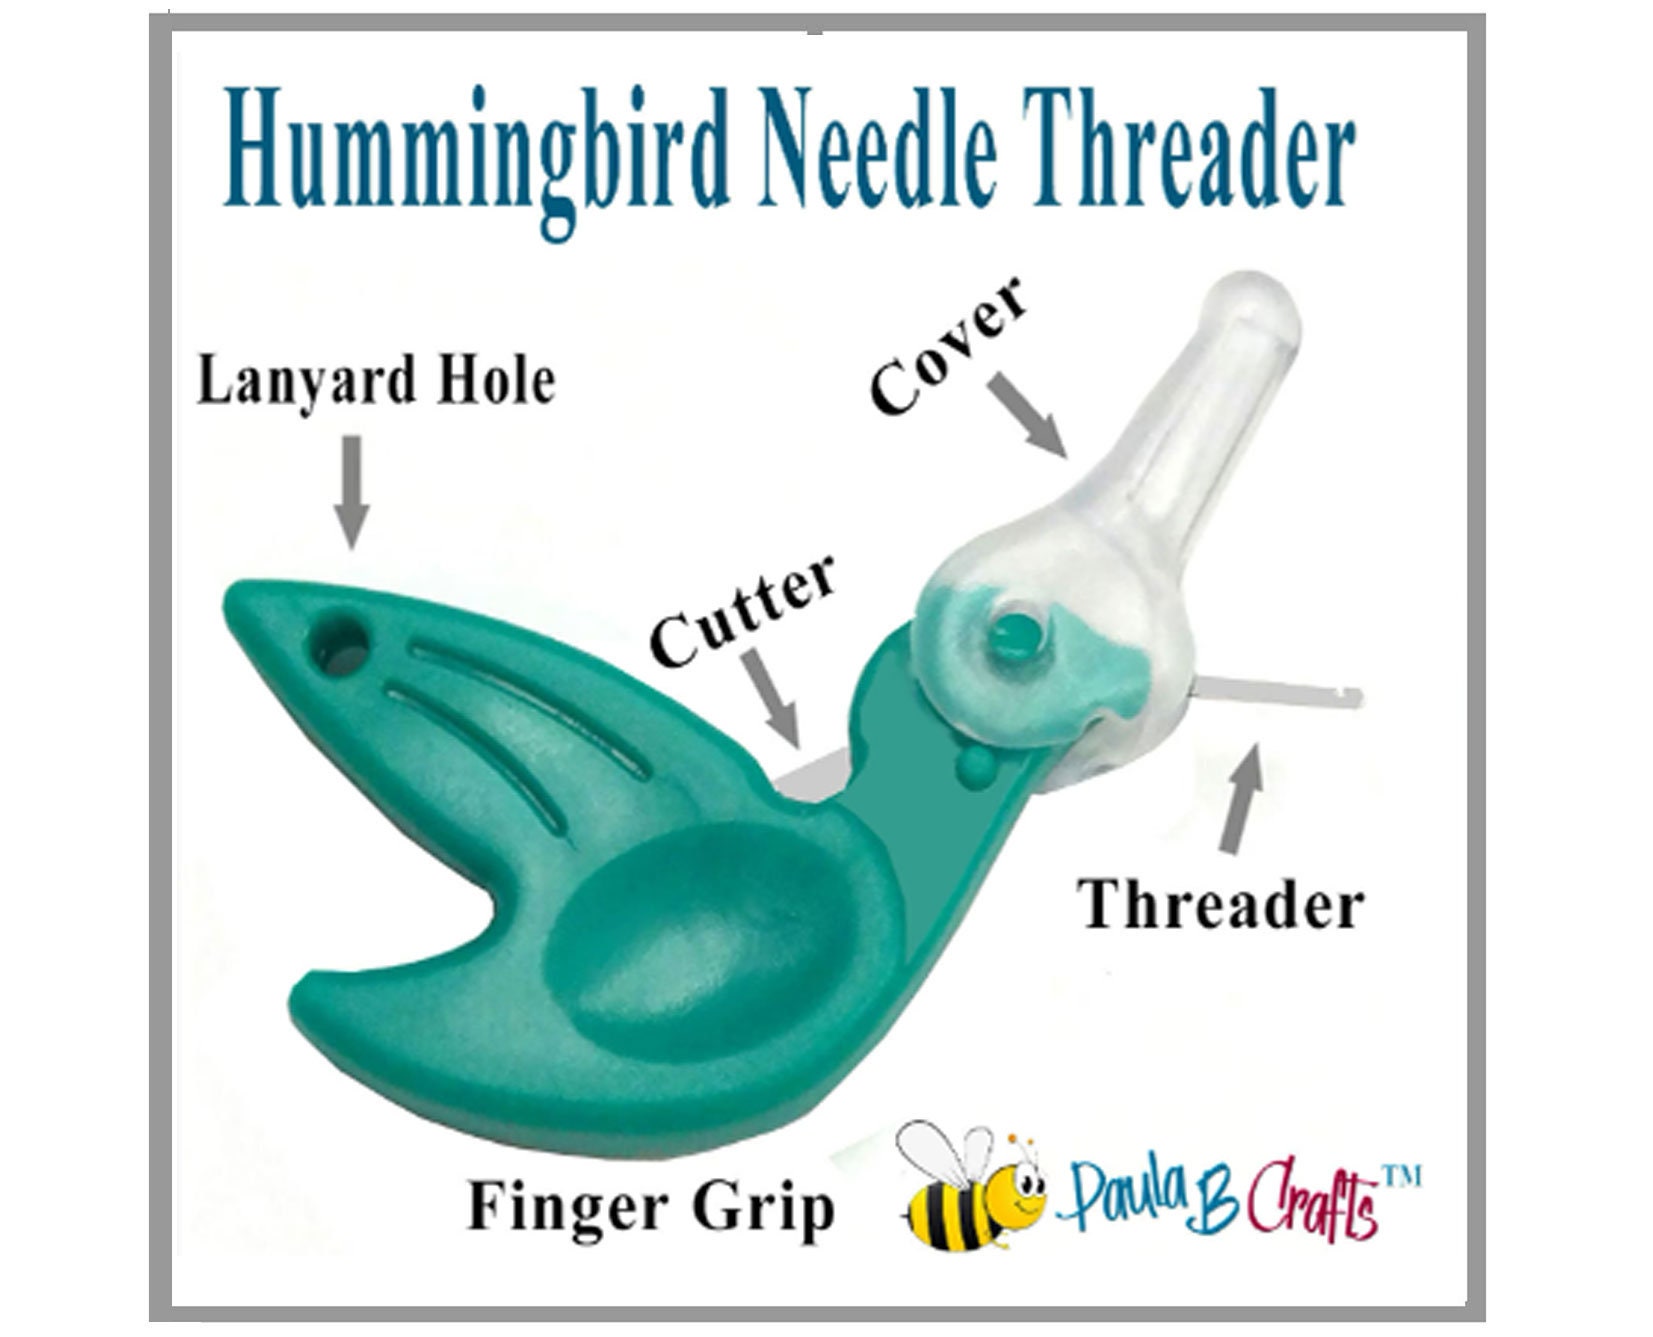 Hummingbird Sewing Needle Threader for Threading Hand Sewing Needles With  Sewing Thread. Green, Dritz 270 -  Israel